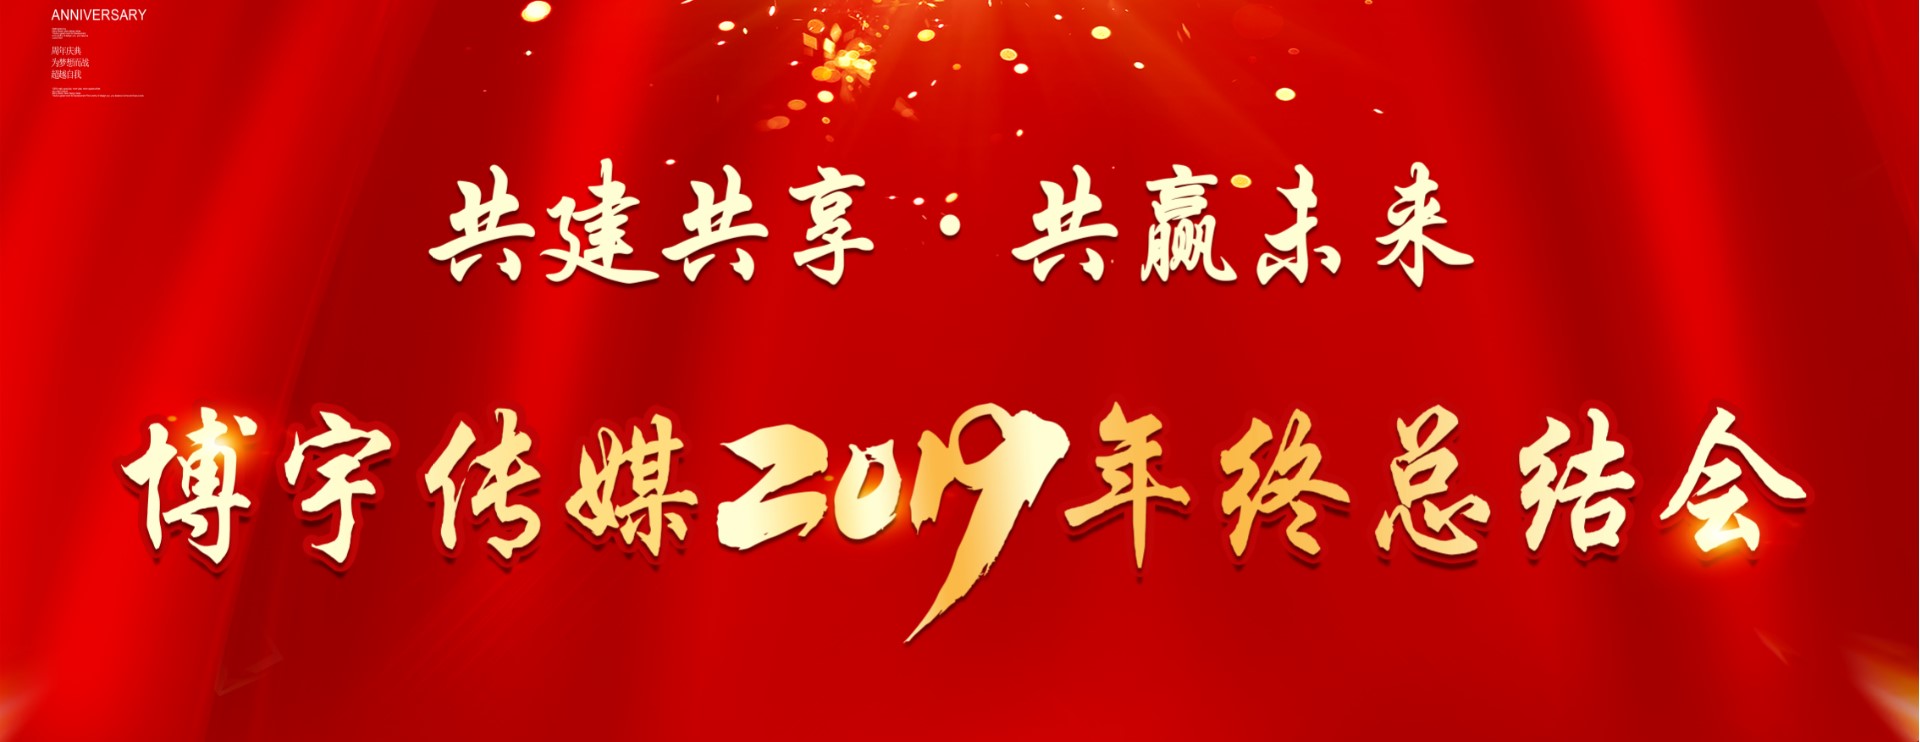 共建共享·共赢未来——博宇传媒2019年终总结会圆满举行